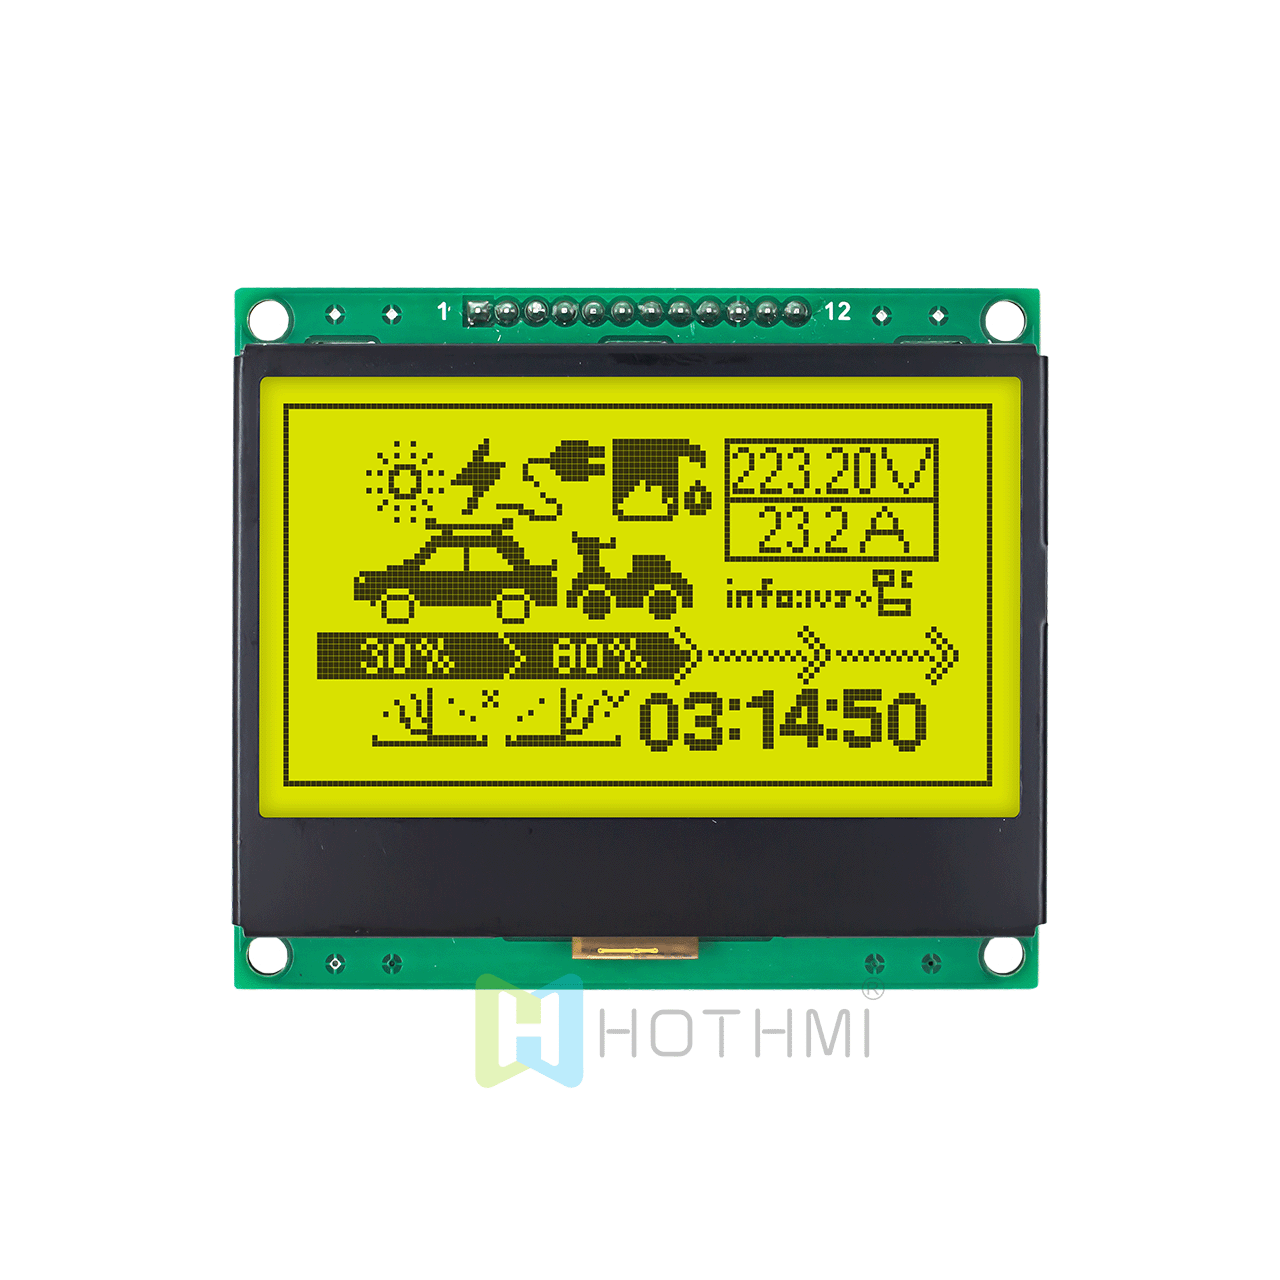 适用于 Arduino 的 3 英寸黄绿色 128x64 图形 LCD 显示模块 SPI